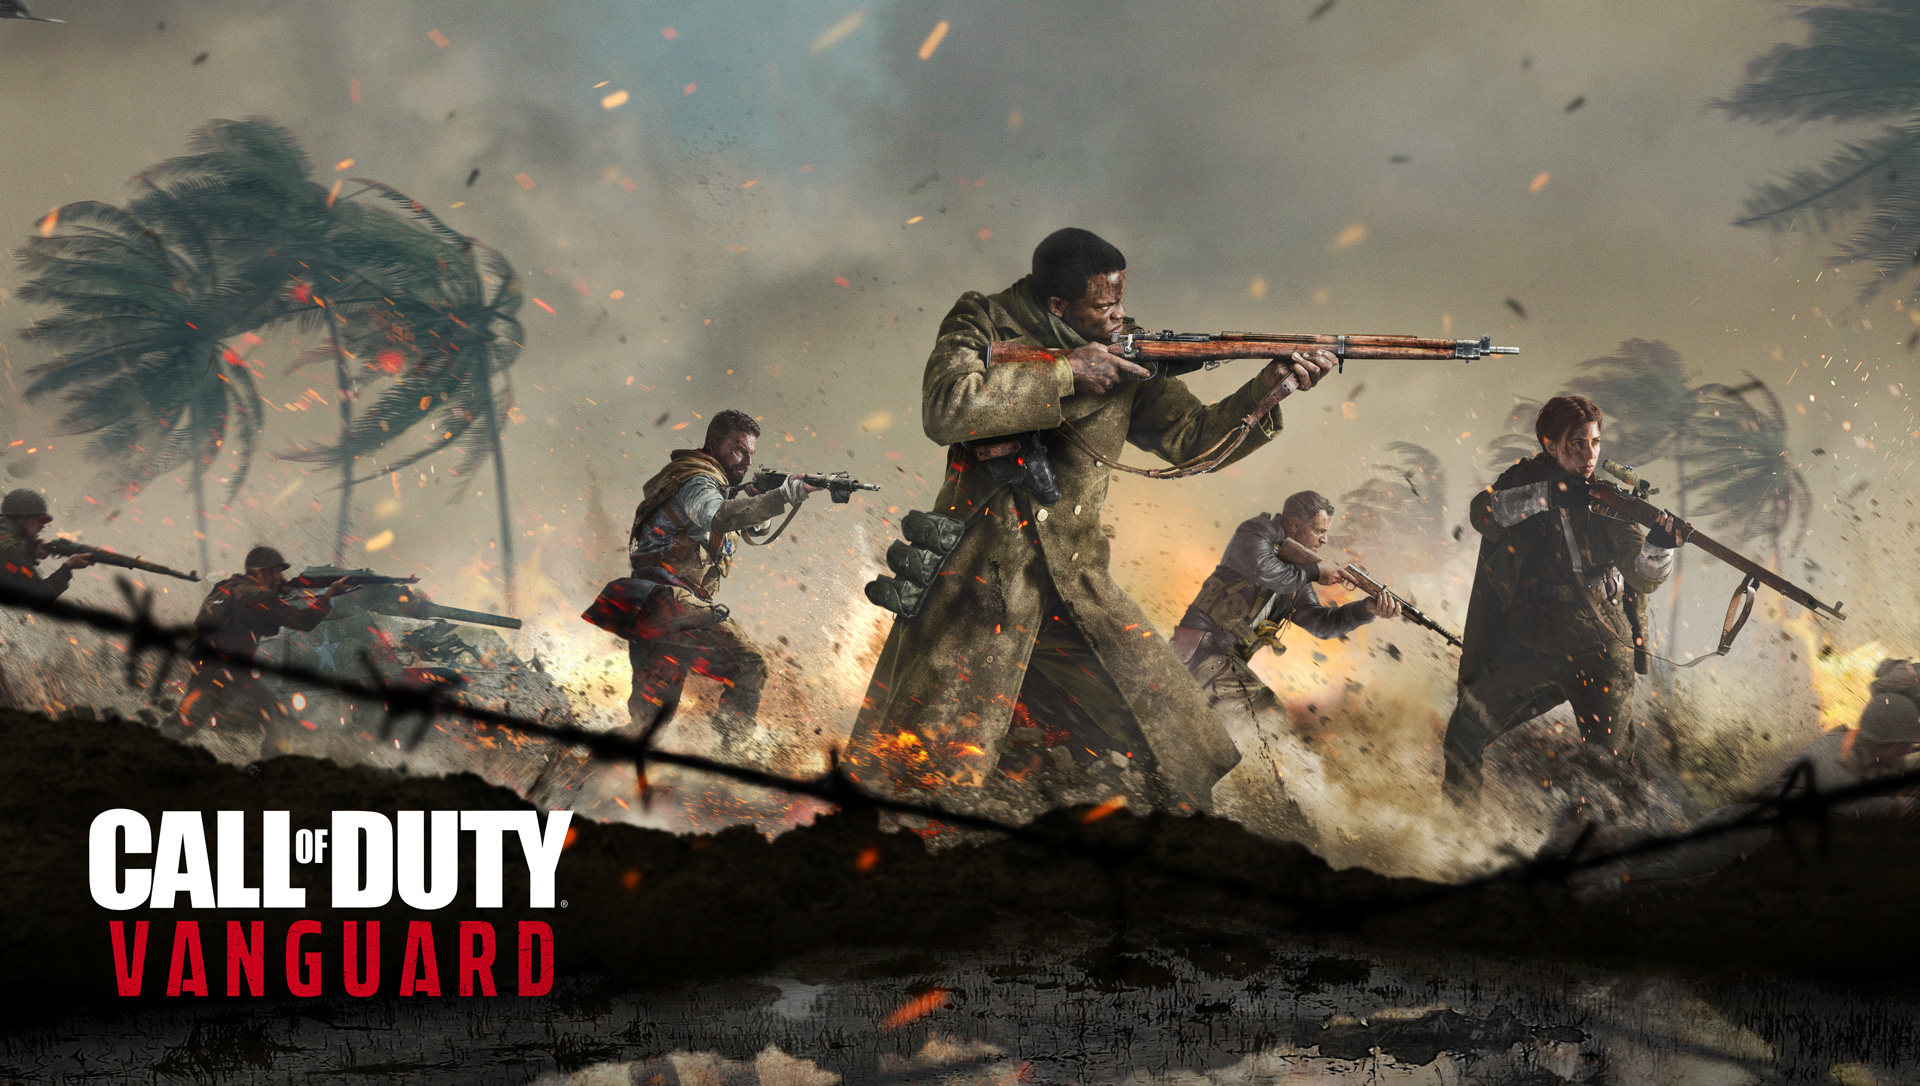 เปิดตัววิดีโอทีเซอร์ใหม่ของ Call of Duty: Vanguard อย่างเป็นทางการ พร้อมเตรียมเผยรายละเอียดใน Call of Duty: Warzone วันที่ 20 สิงหาคมนี้